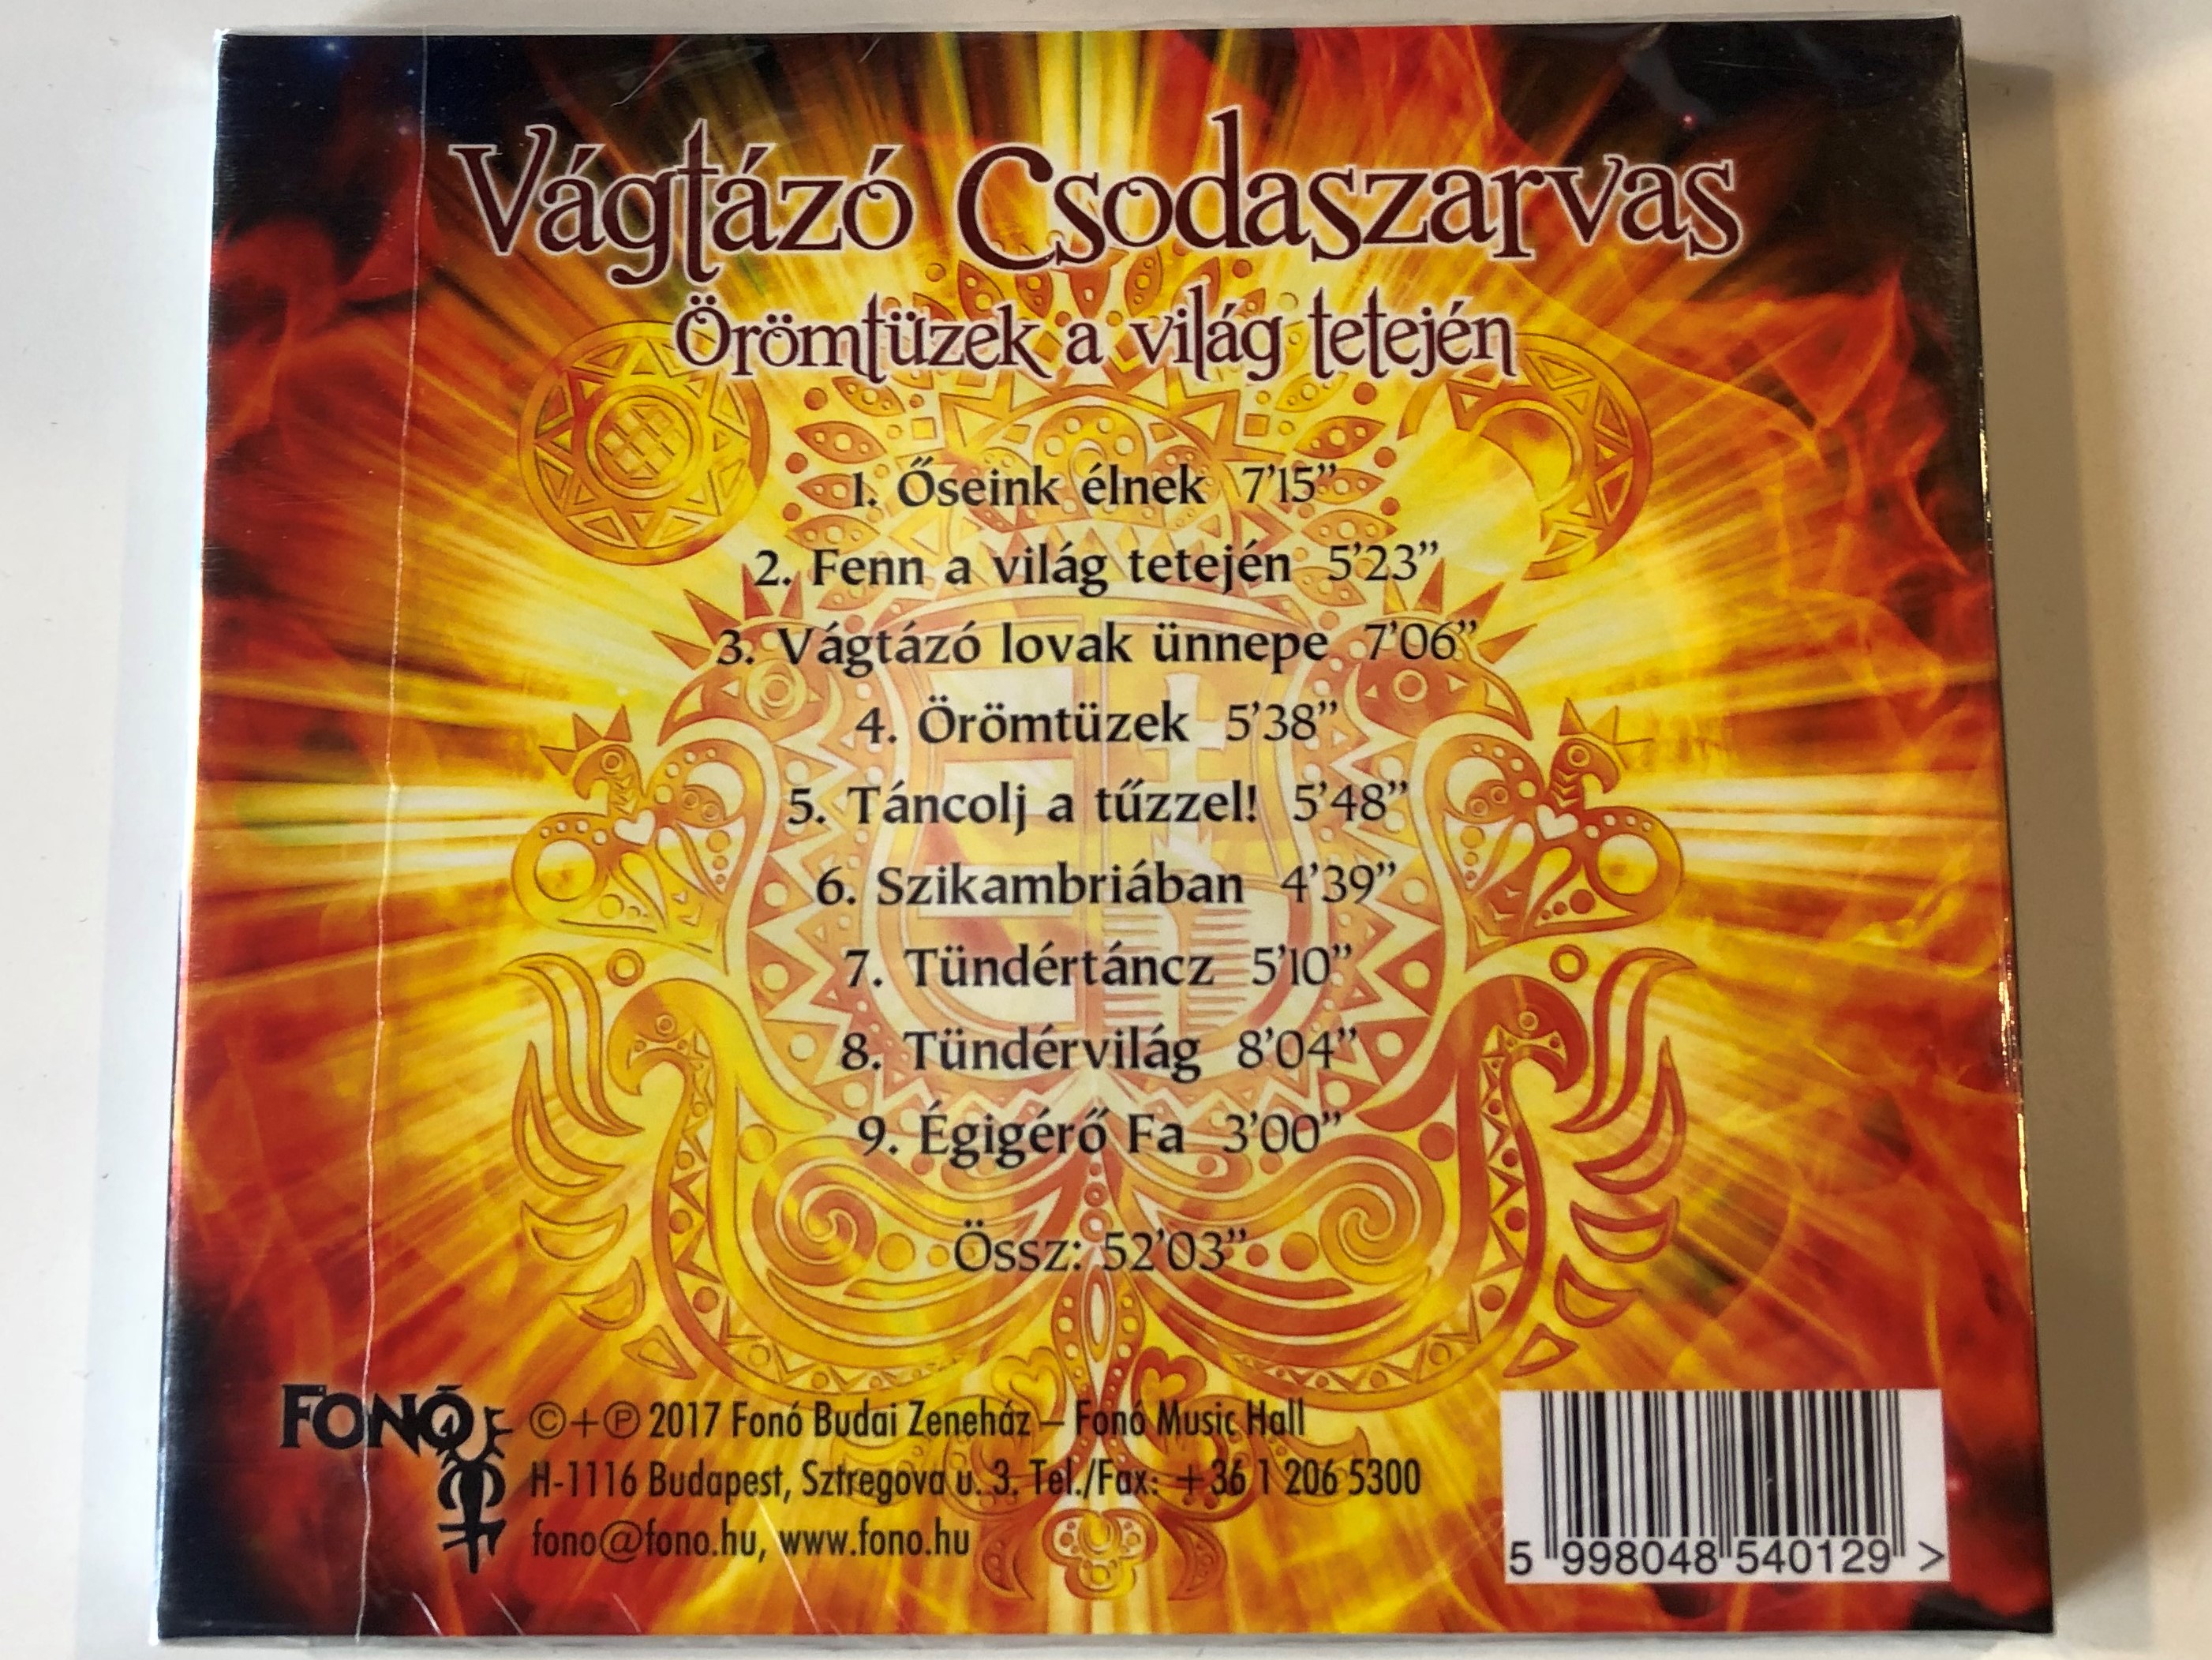 v-gt-z-csodaszarvas-r-mt-zek-a-vil-g-tetej-n-fon-records-audio-cd-2017-5998048540129-2-.jpg